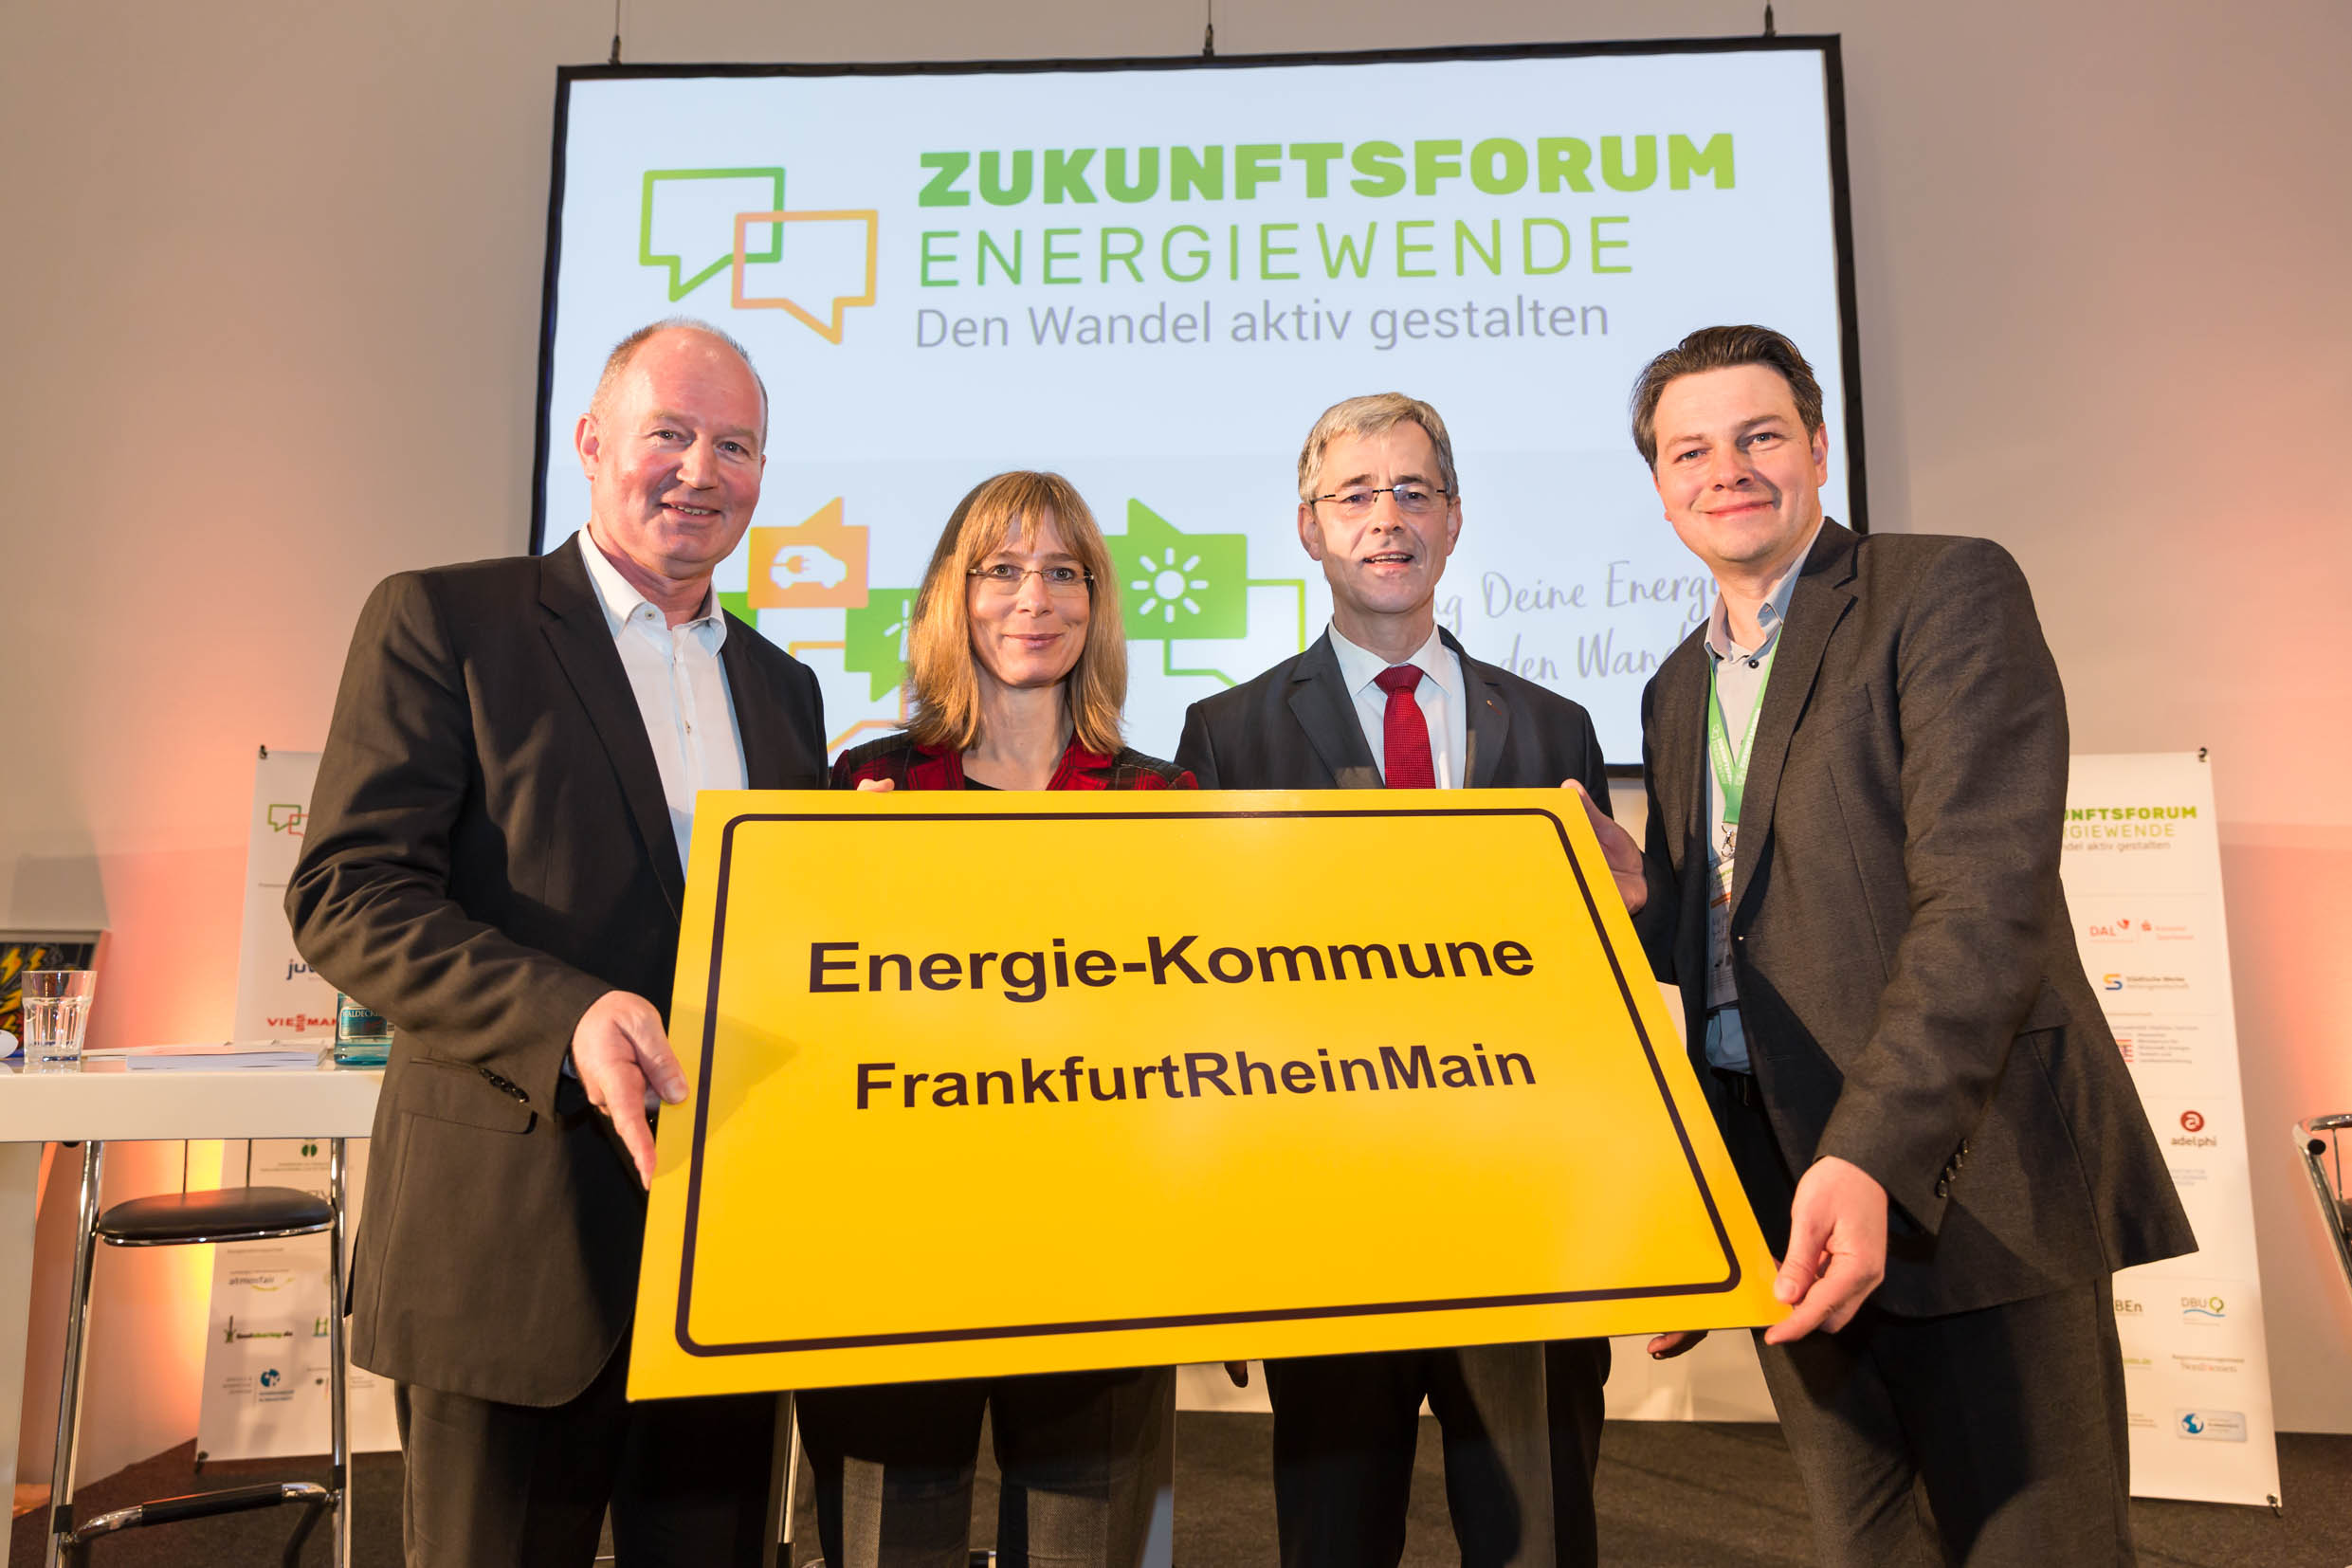 Preisverleihung auf dem Zukunftsforum Energiewende 2017